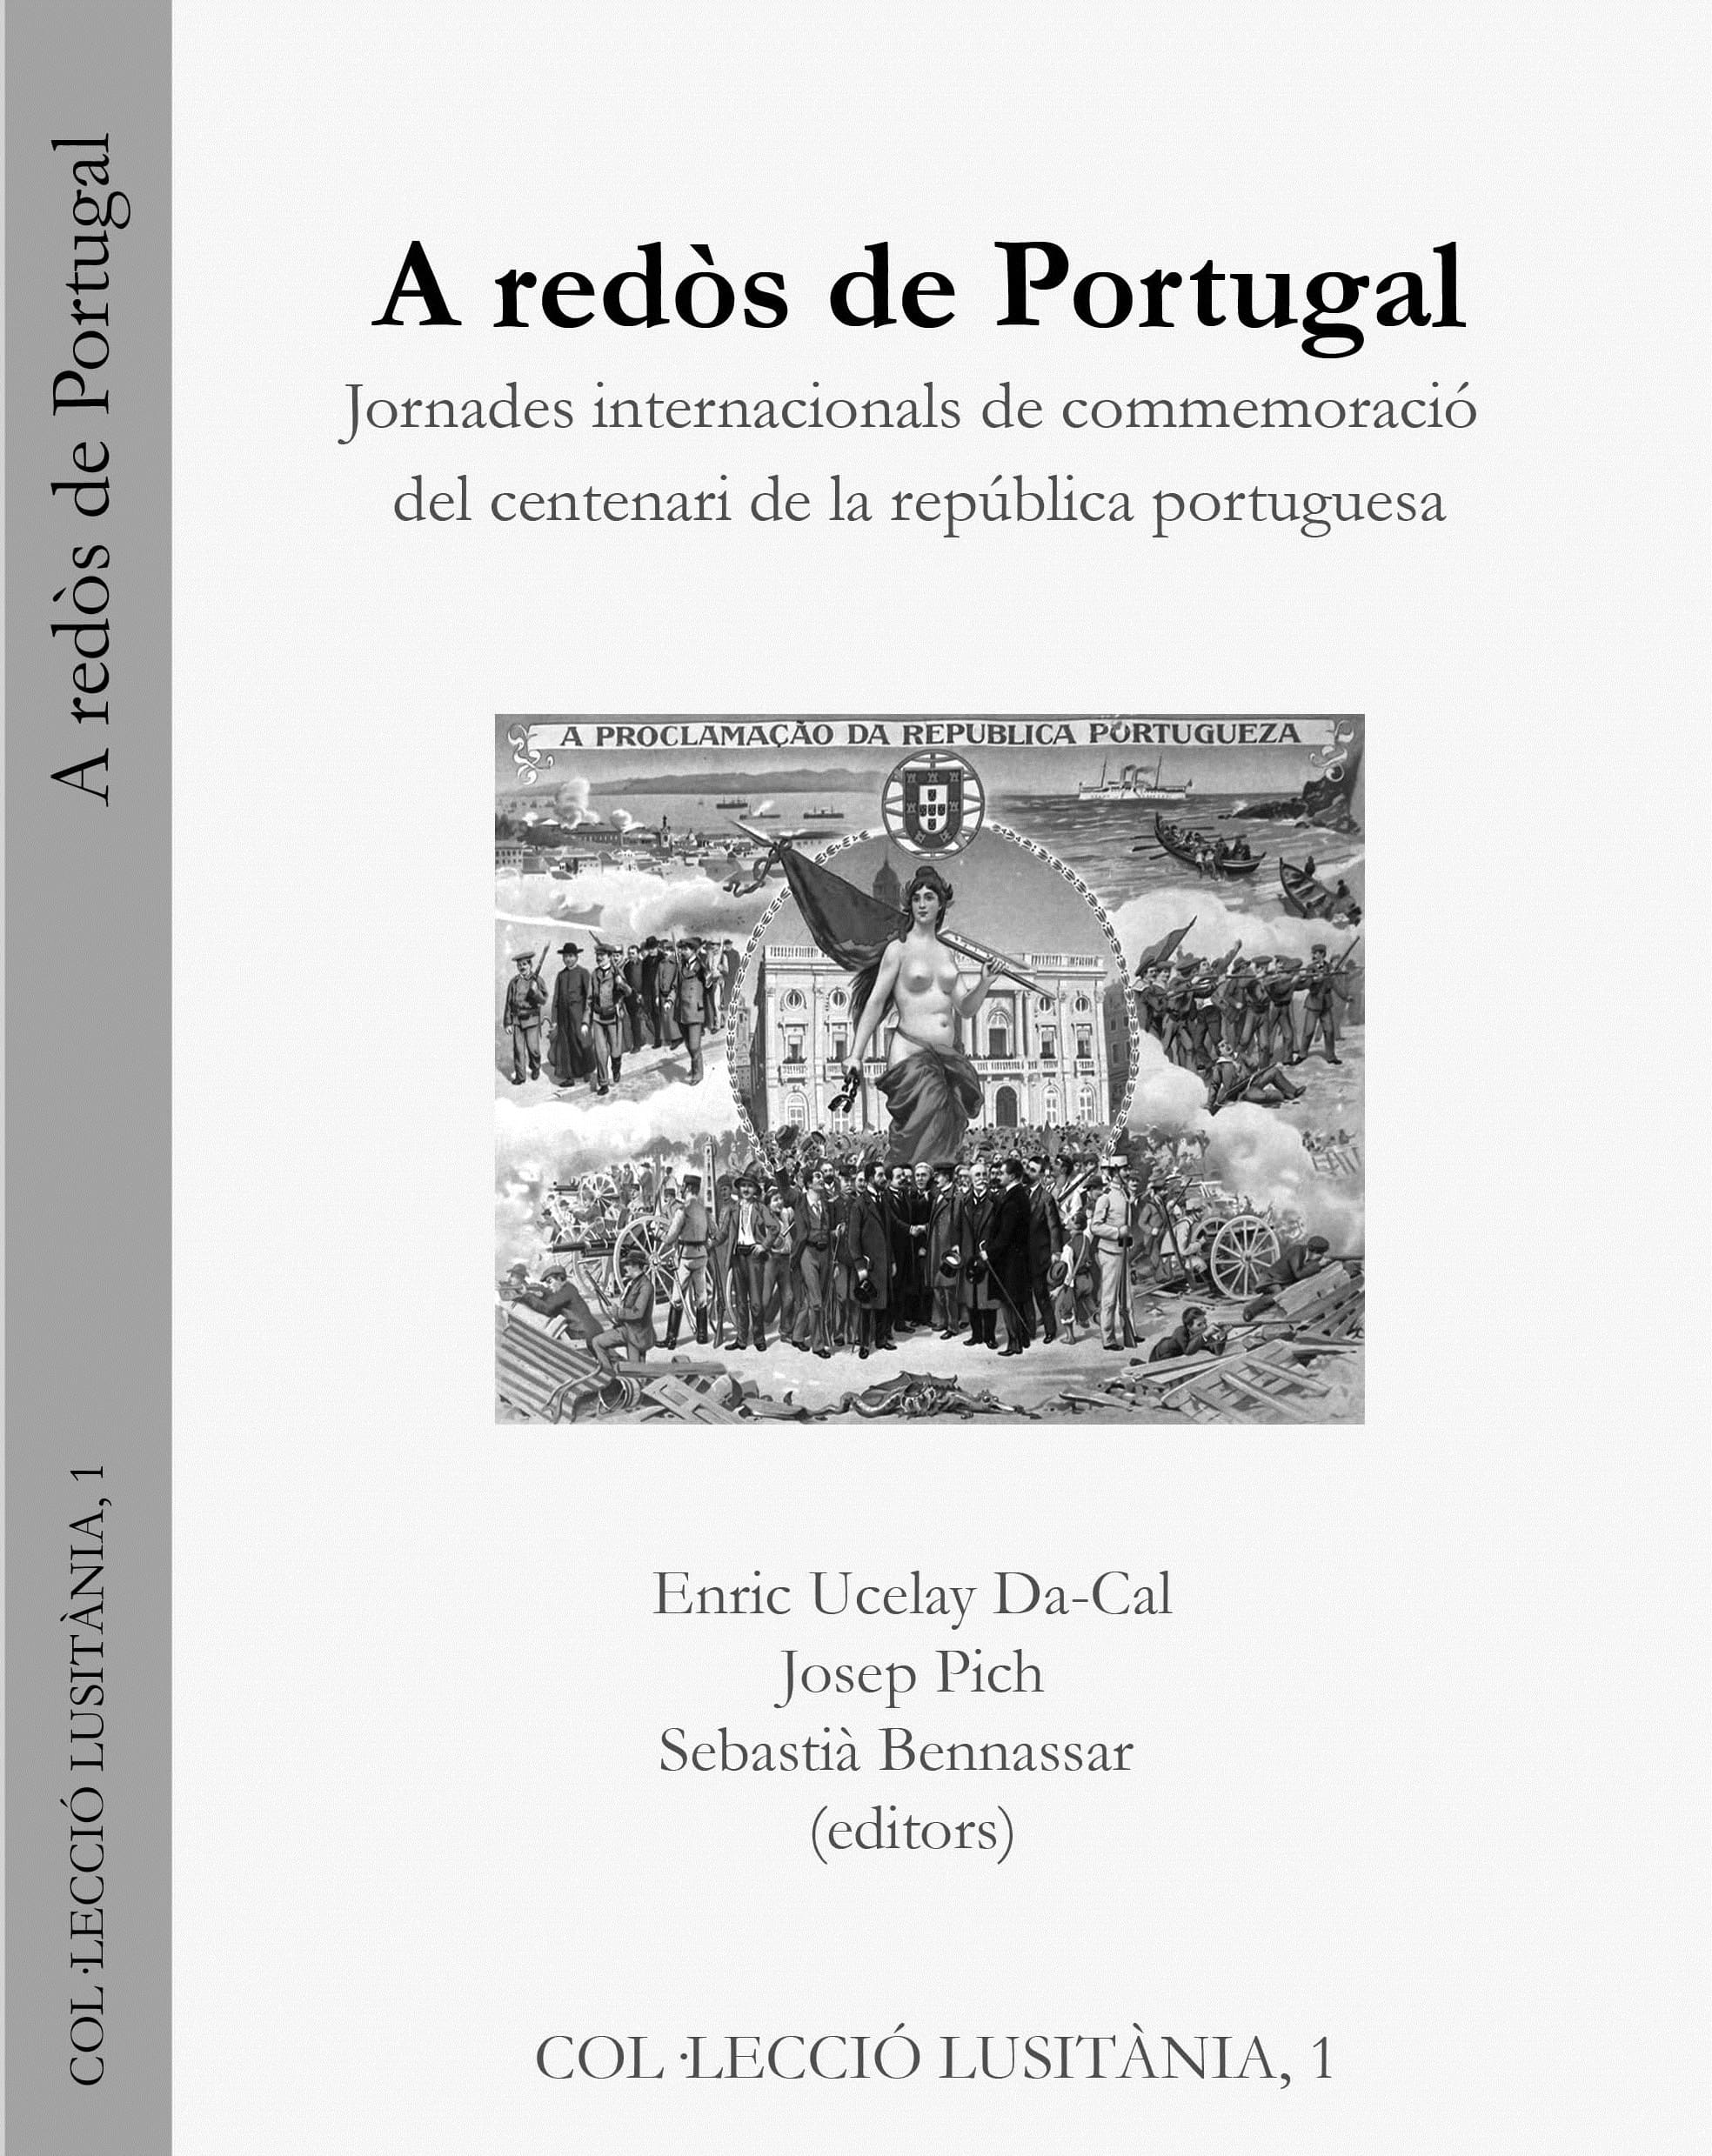 Imagen de portada del libro A redòs de Portugal